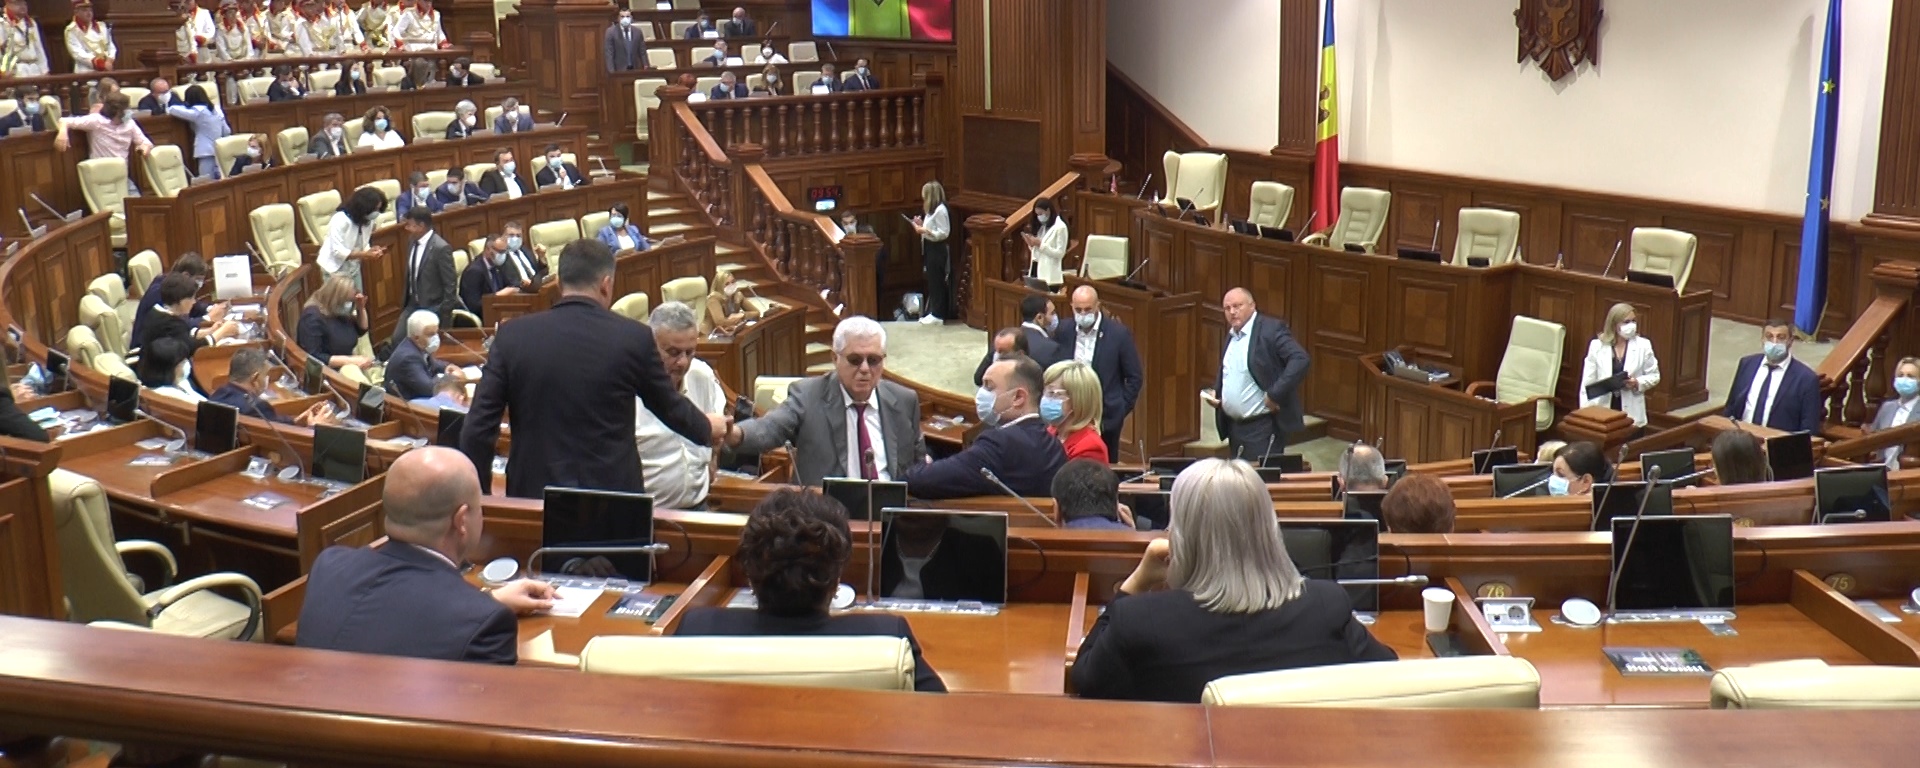 Парламент у Молдовы есть, но пока он ничего решать не может - Sputnik Молдова, 1920, 26.07.2021